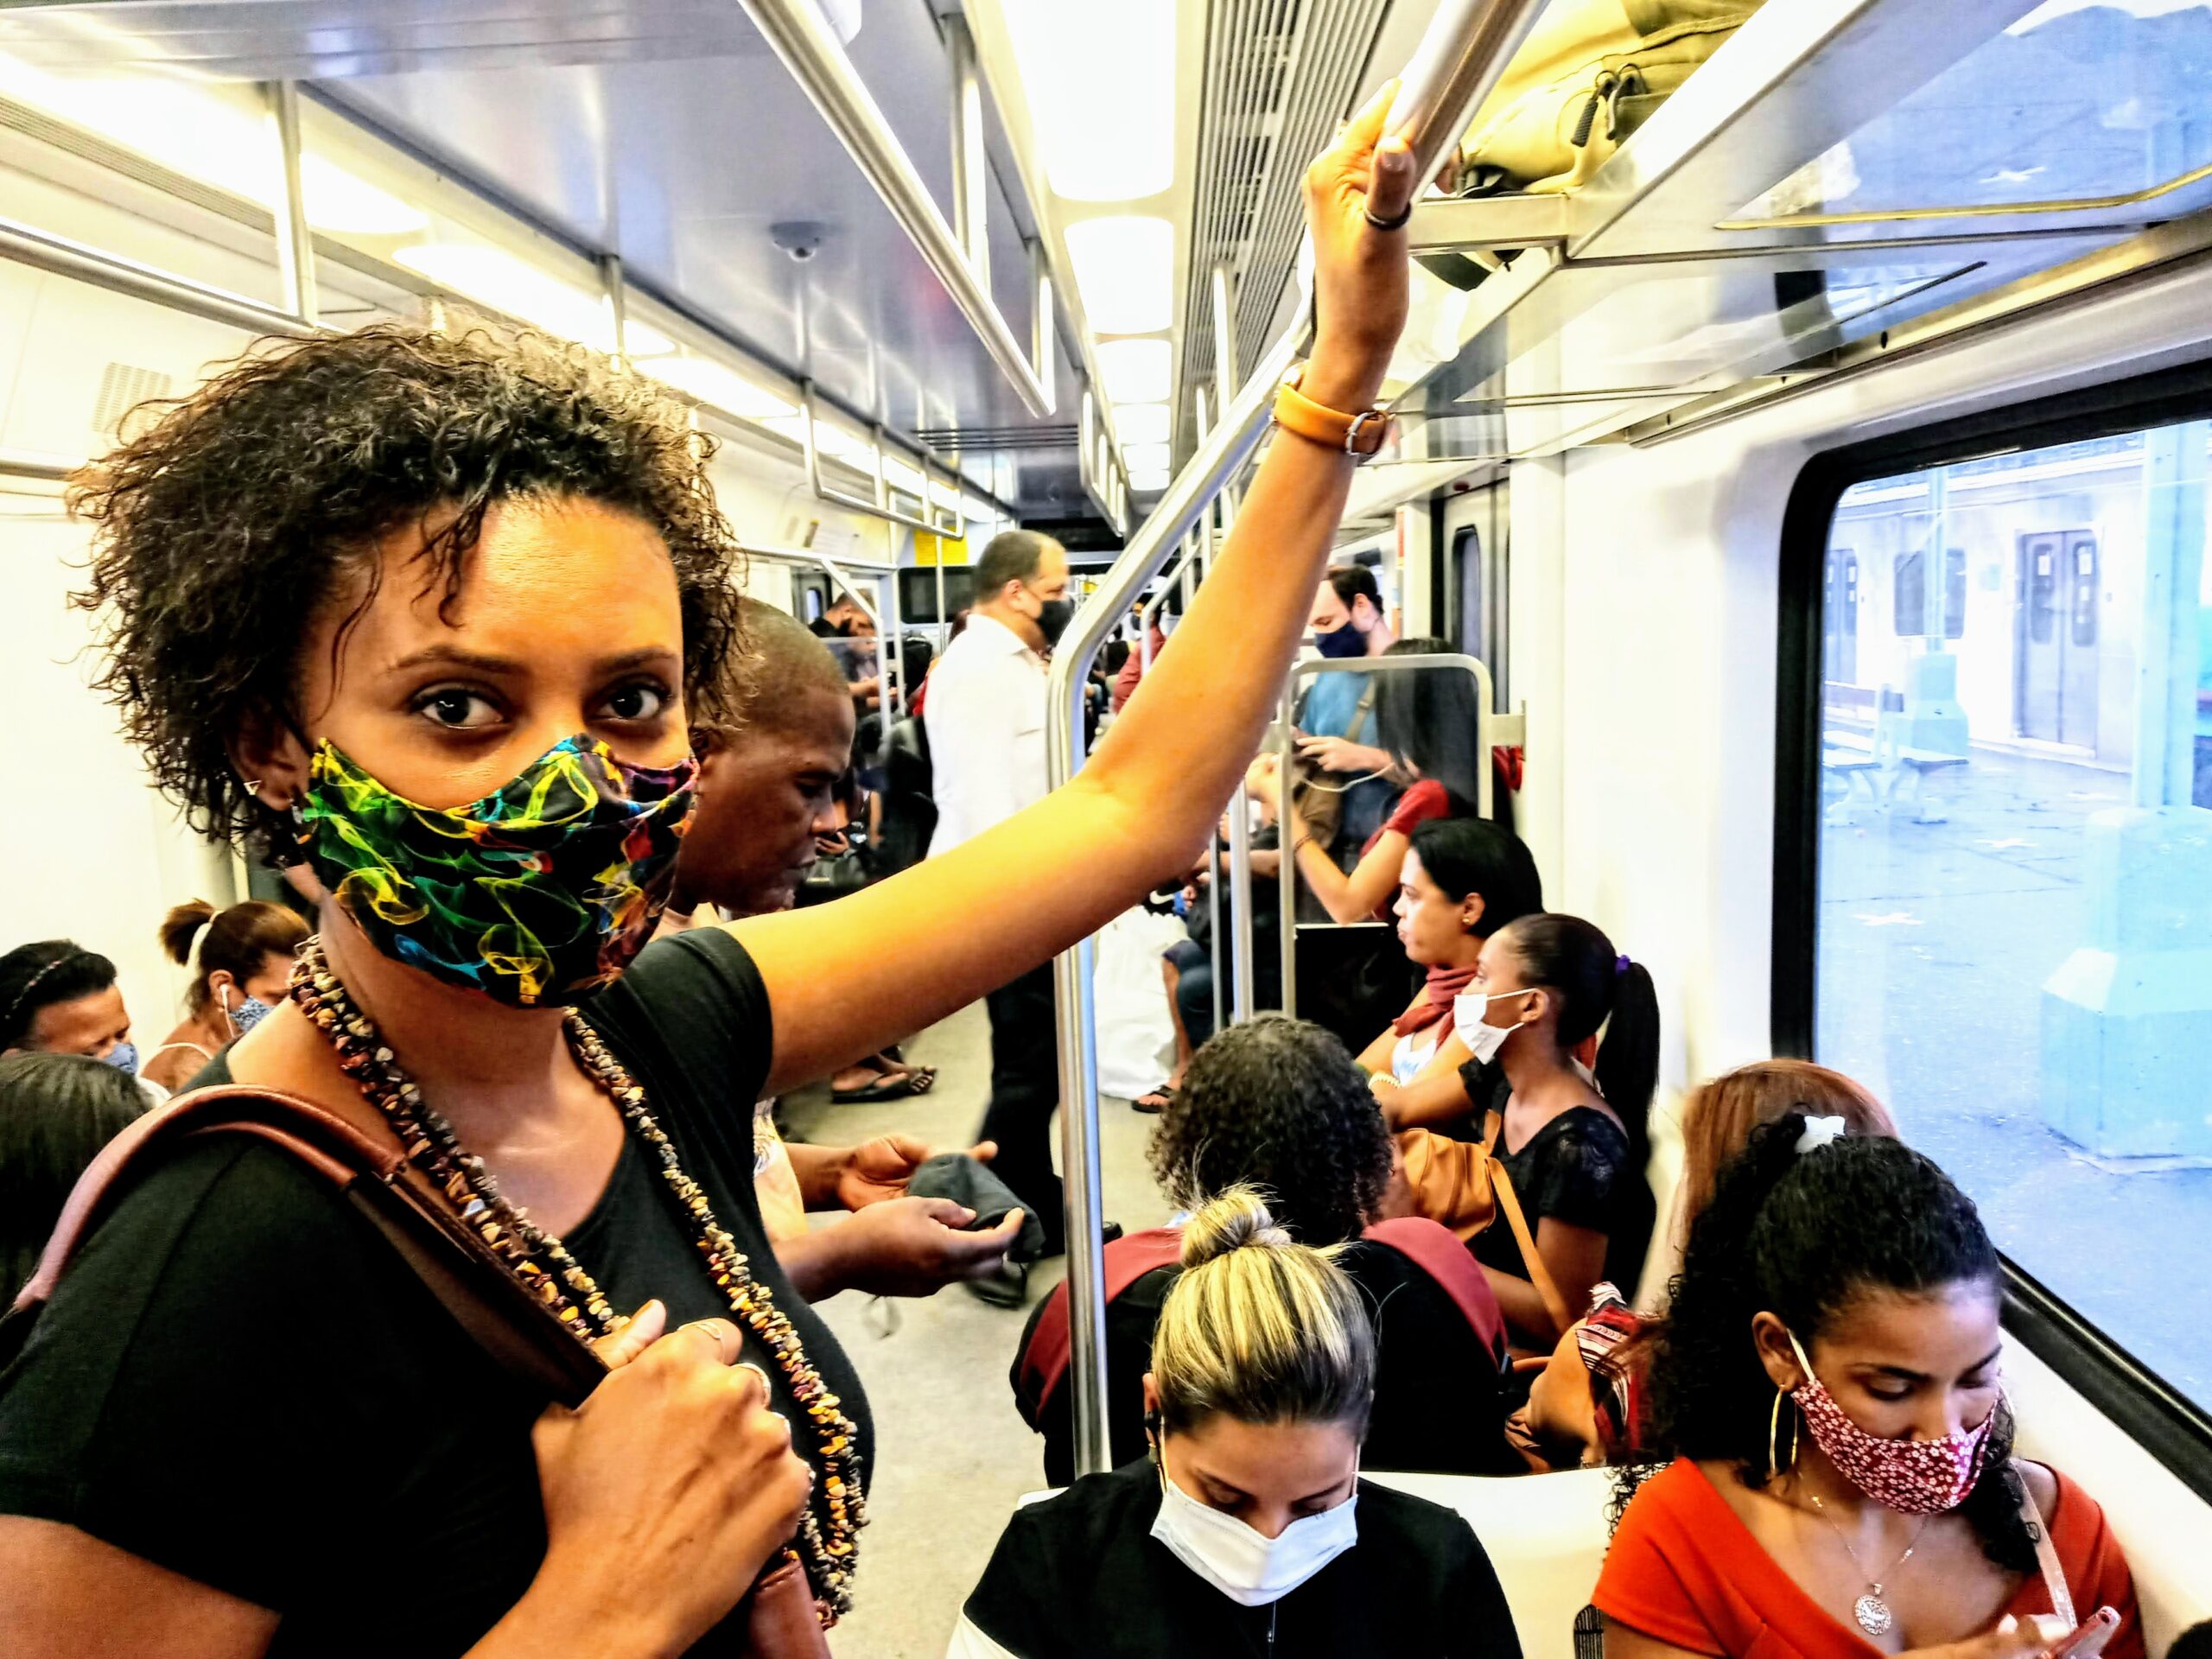 Kelly Martins trens sobrecarregam a saúde mental da população negra. Foto por: Kelly Martins